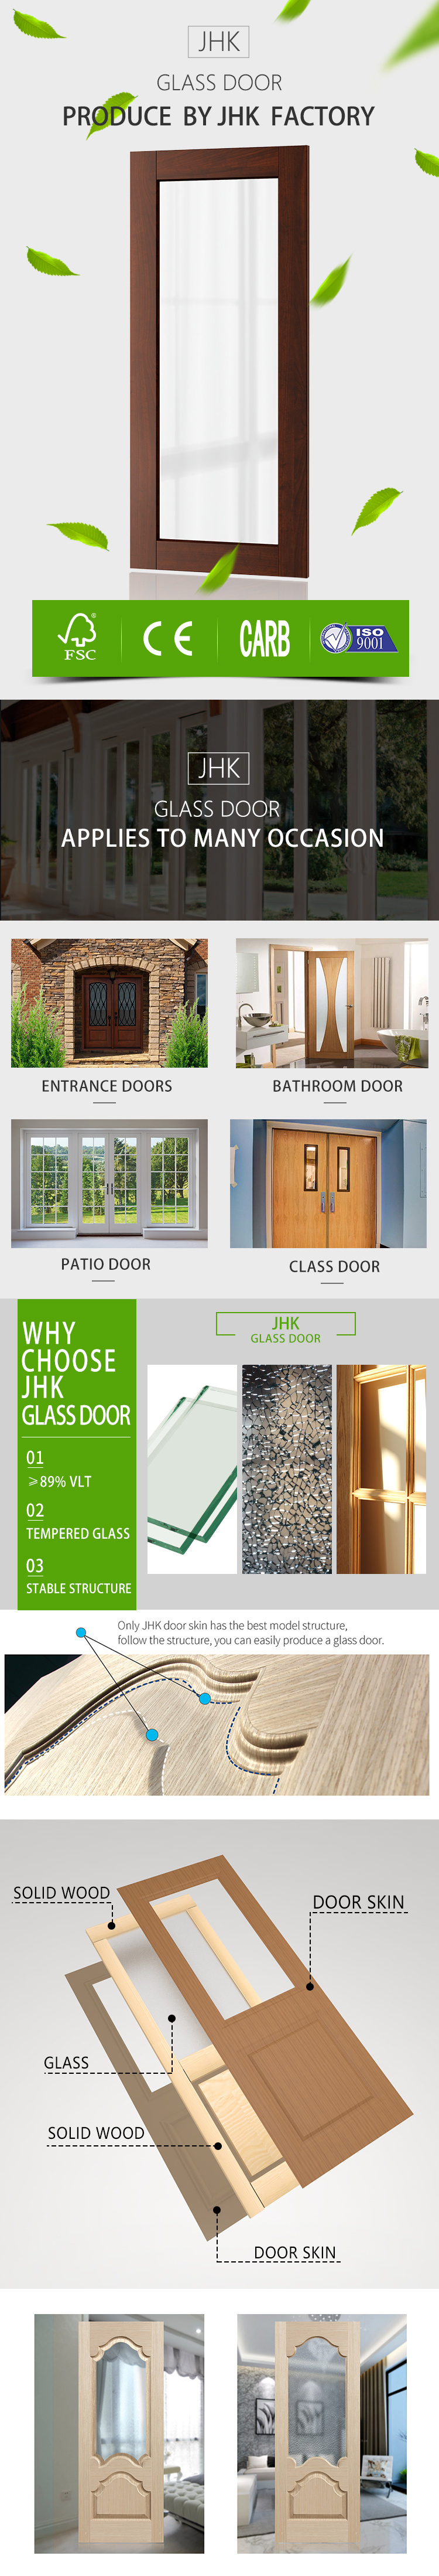 Jhk-G21 Interior Double Doors Prehung Door Design House Glass Door